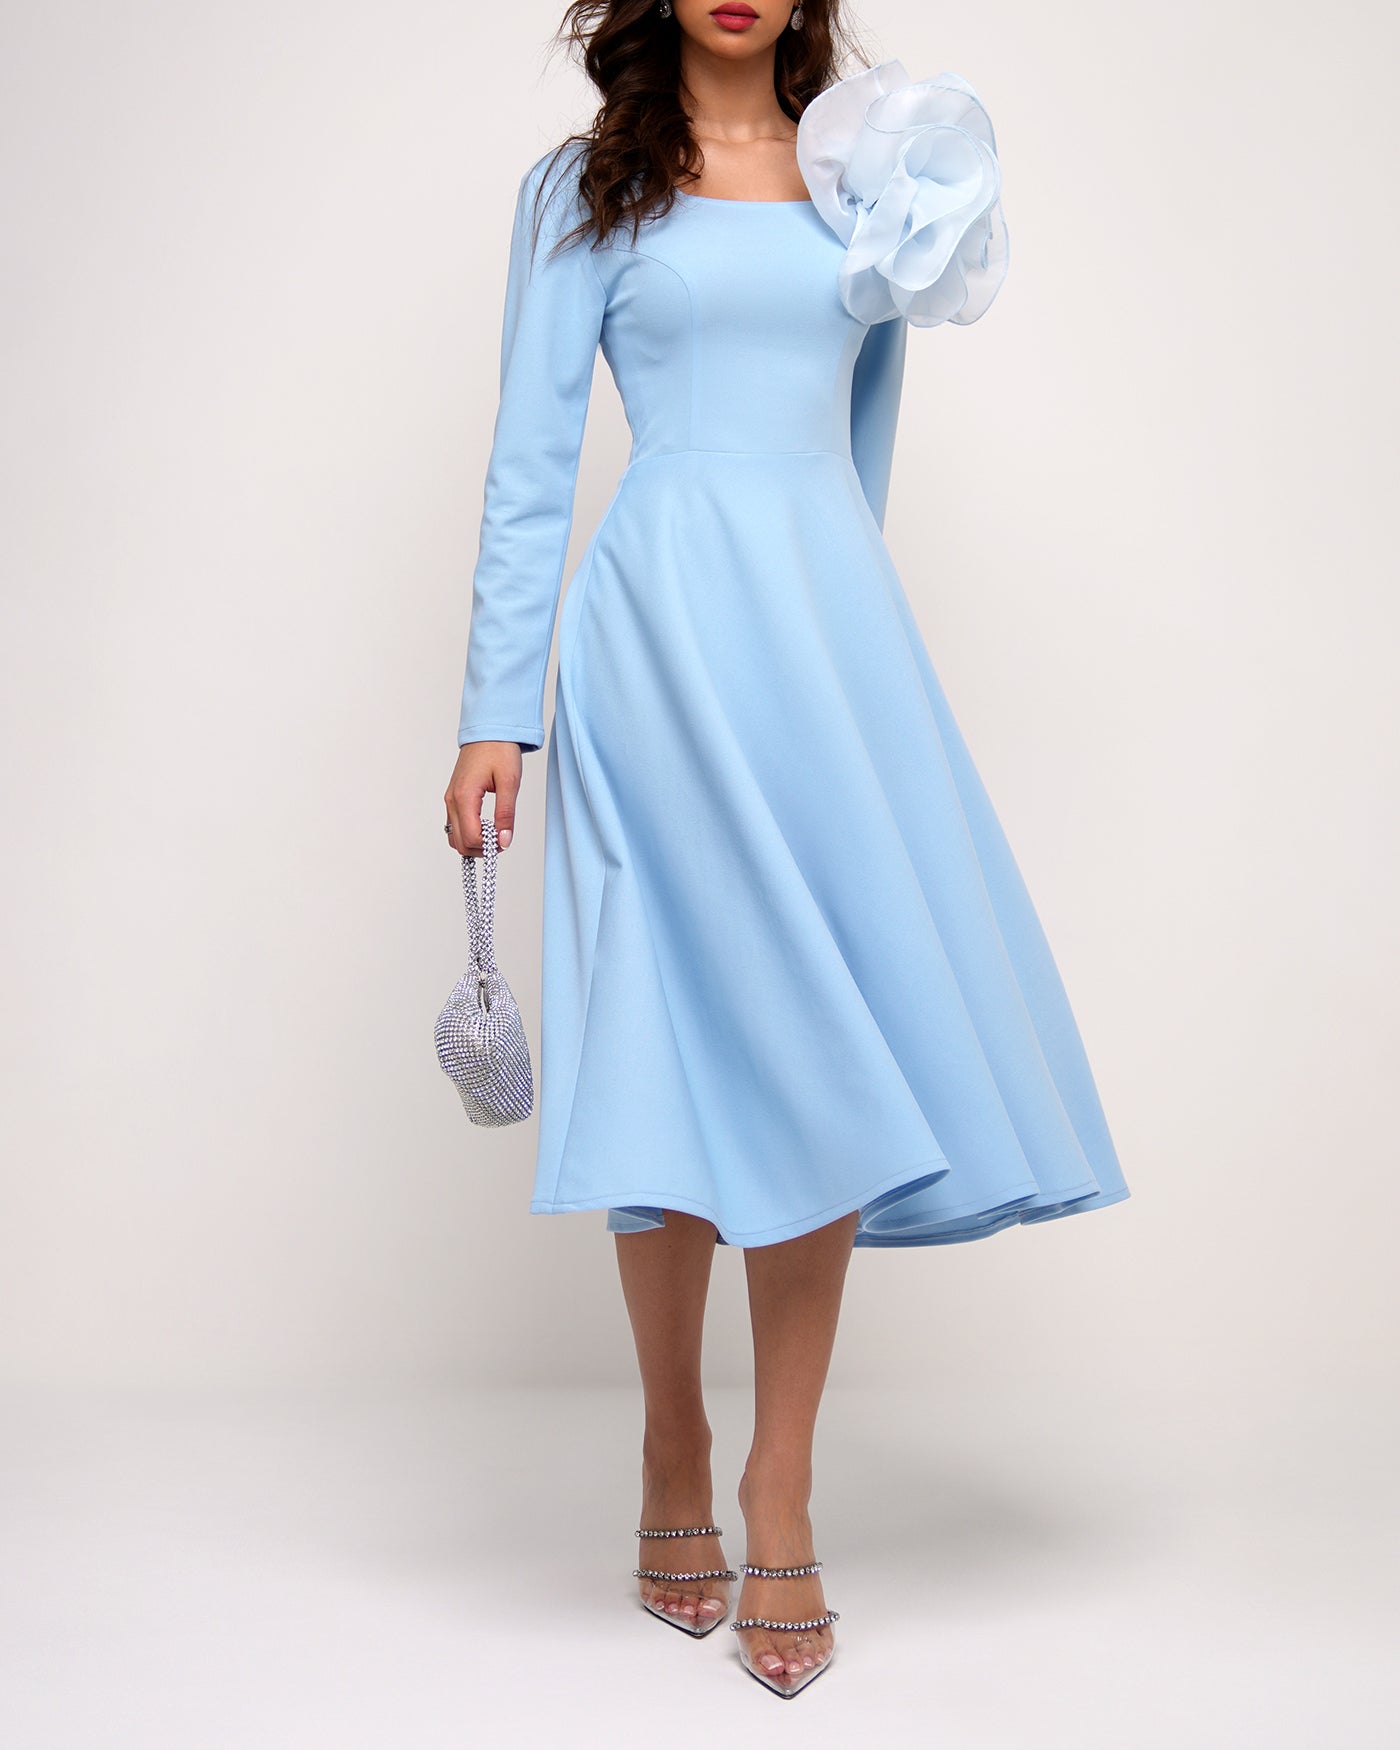 Cinderella blue 3d flower dress